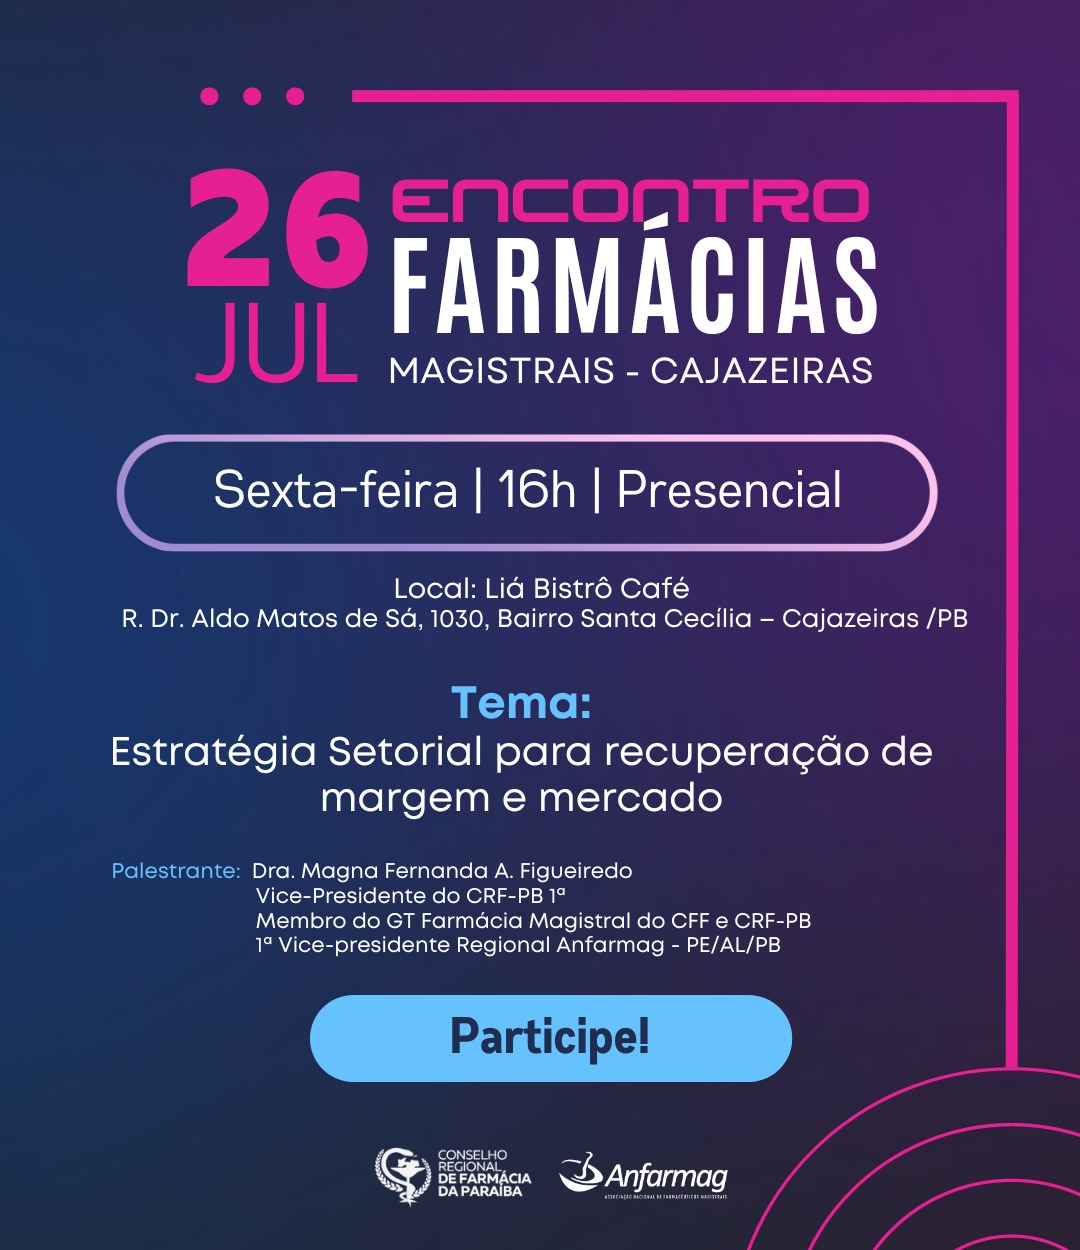 26 DE JULHO -  ENCONTRO DE FARMÁCIAS MAGISTRAIS EM CAJAZEIRAS